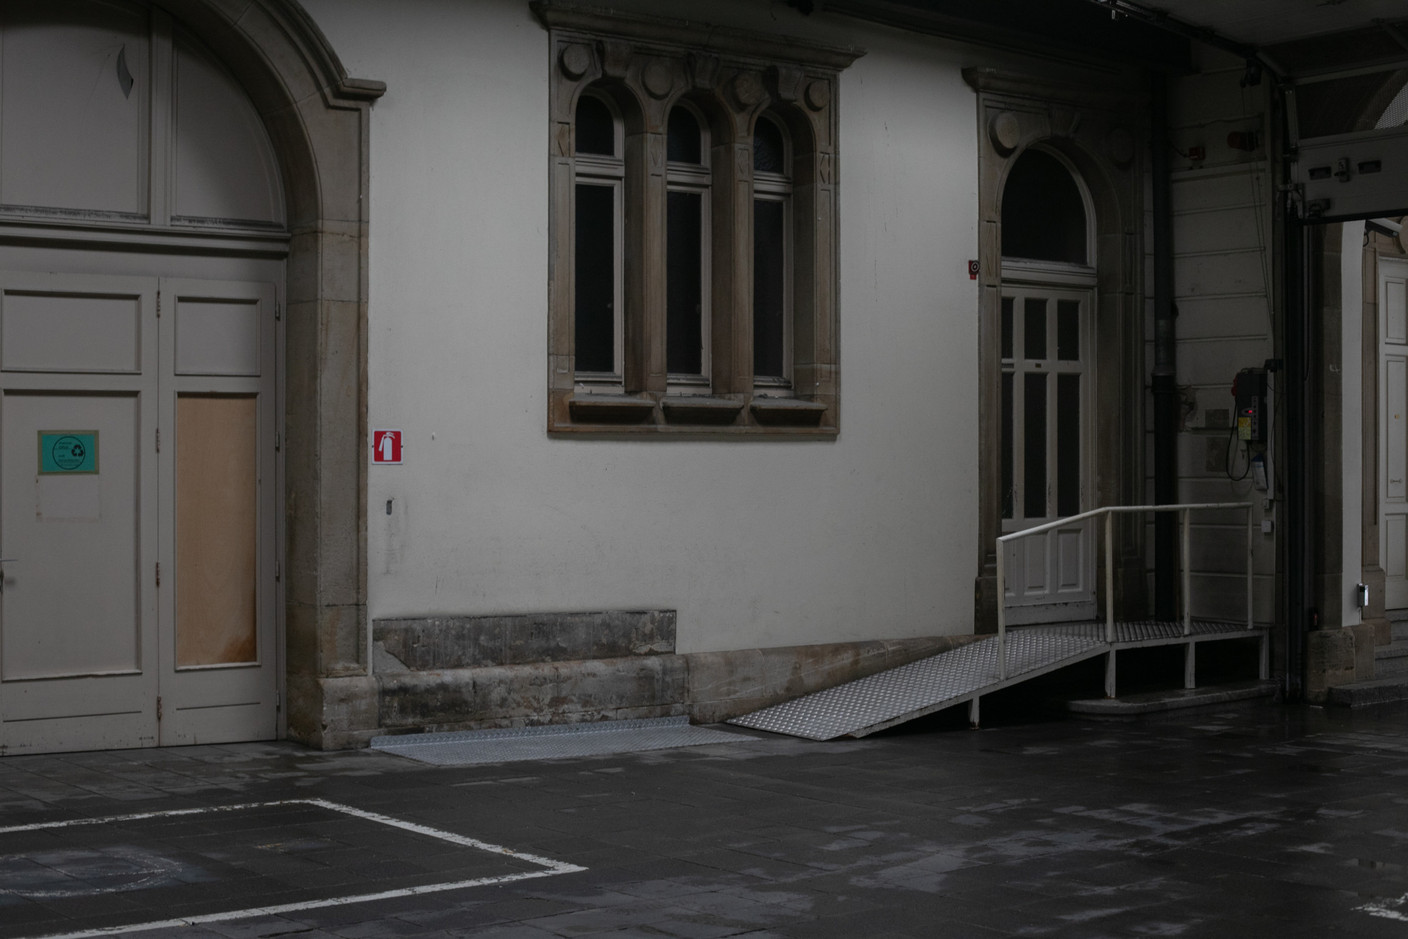 Vue de l’intérieur de l’Hôtel des Postes à Aldringen en juillet 2020. (Photo: Matic Zorman)